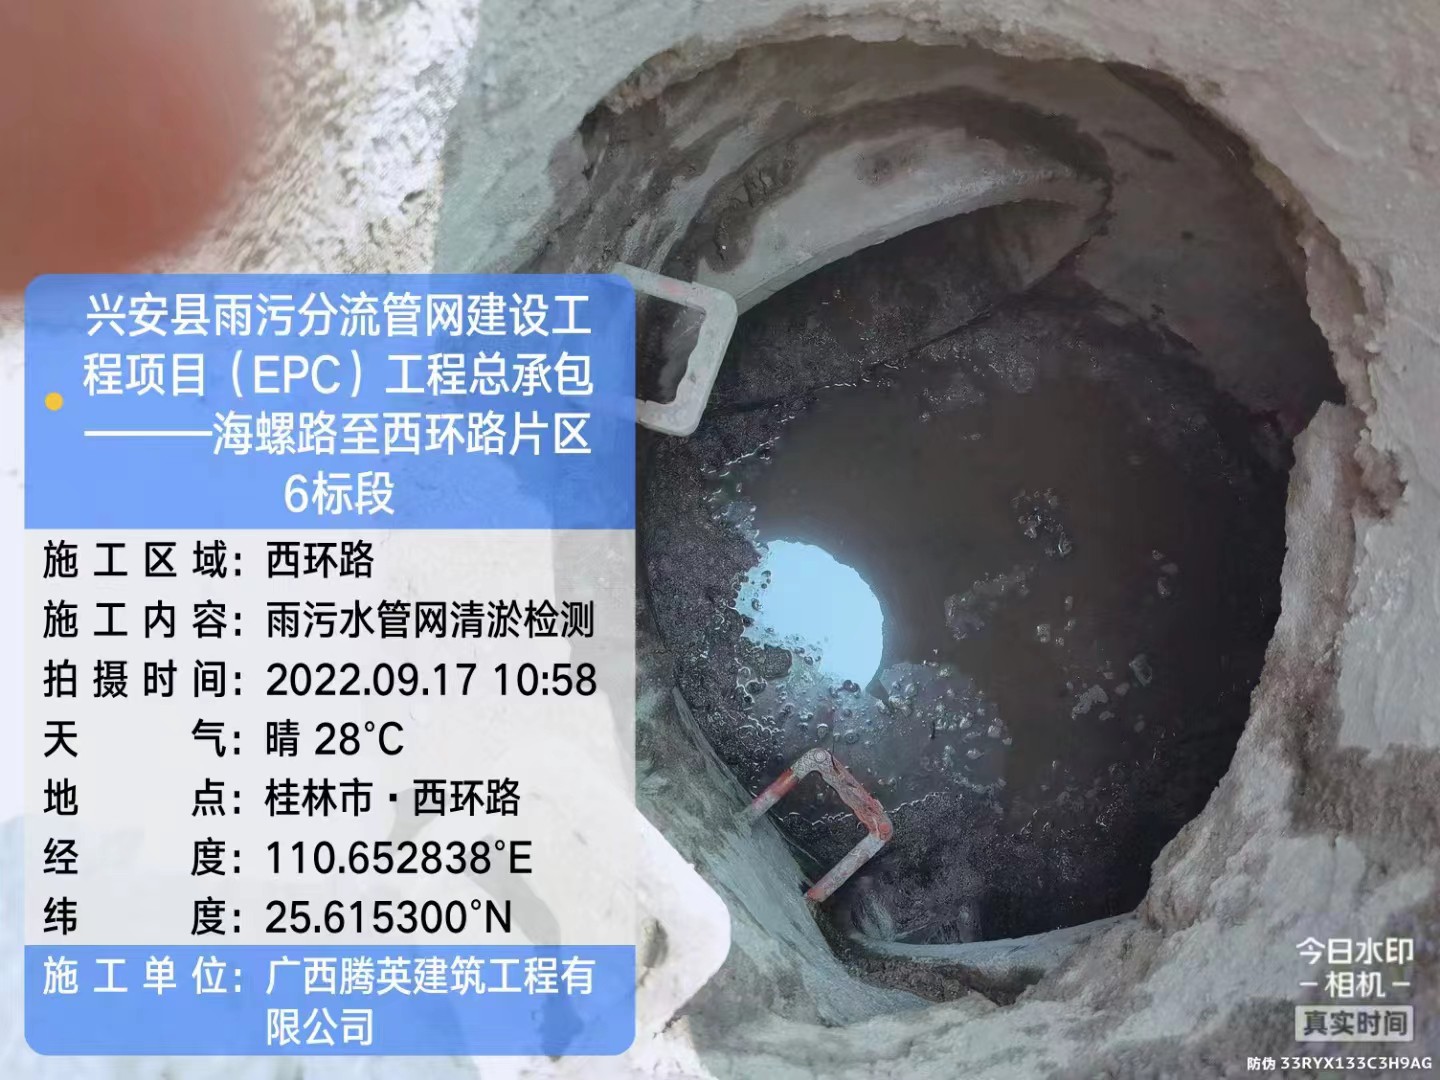 南京秦淮区管道局部修复 污水干湿分离处理